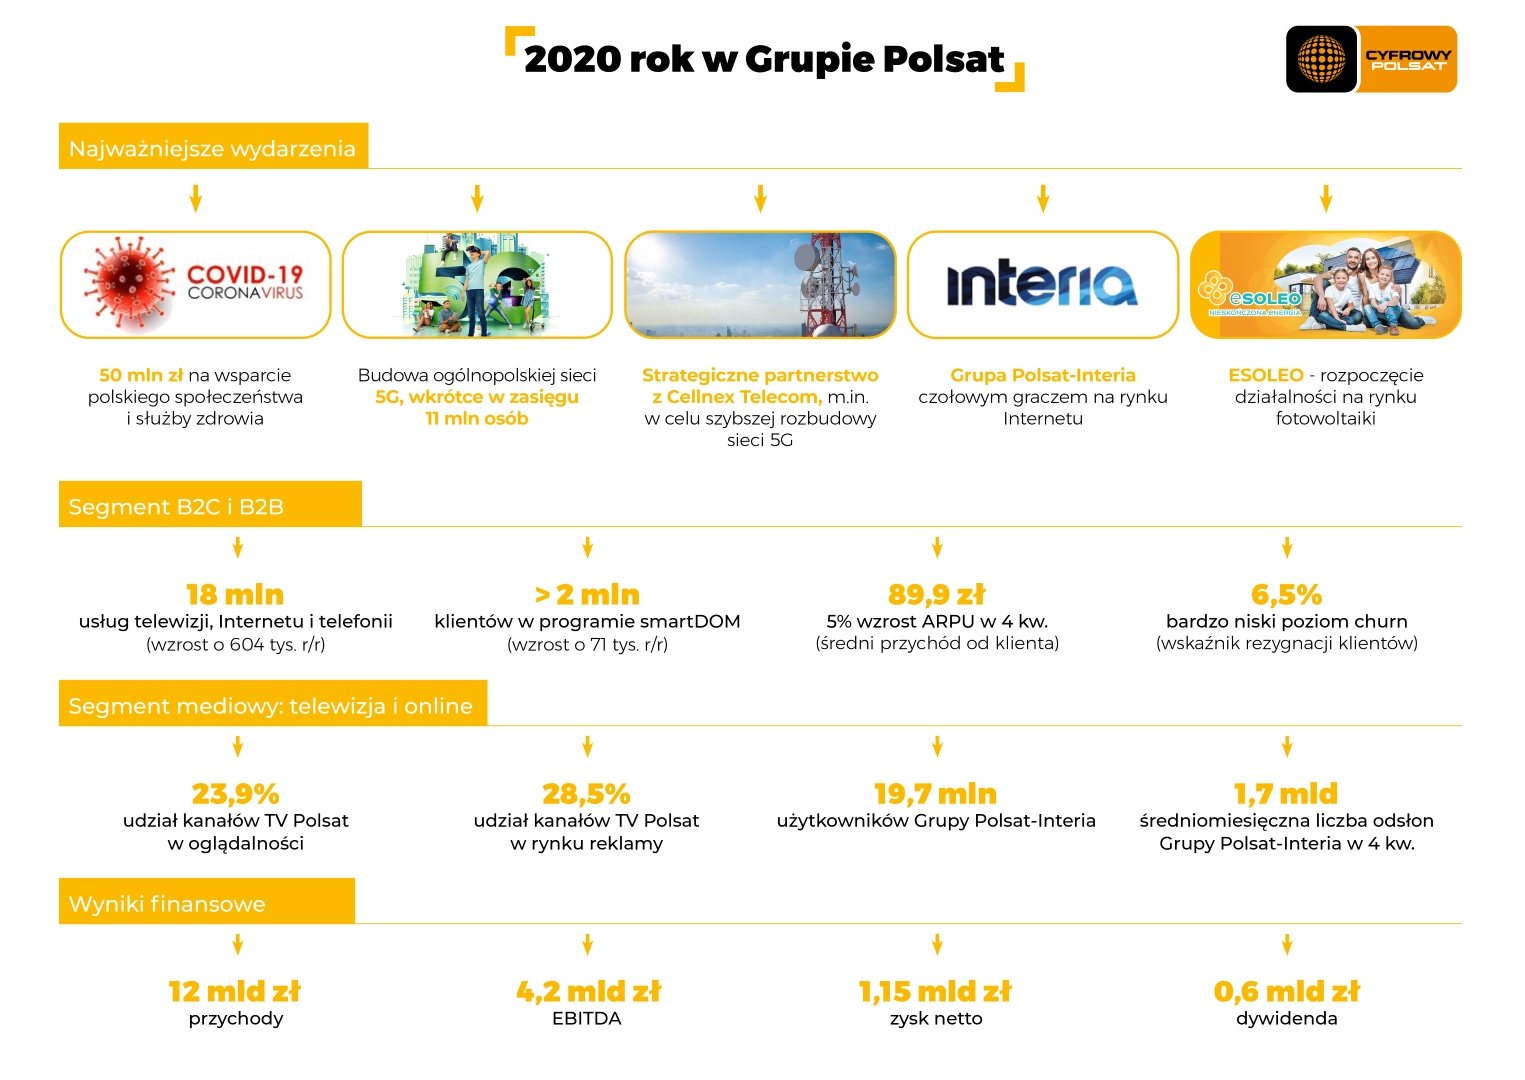 Rok 2020 w Grupie Polsat - podsumowanie infografika.